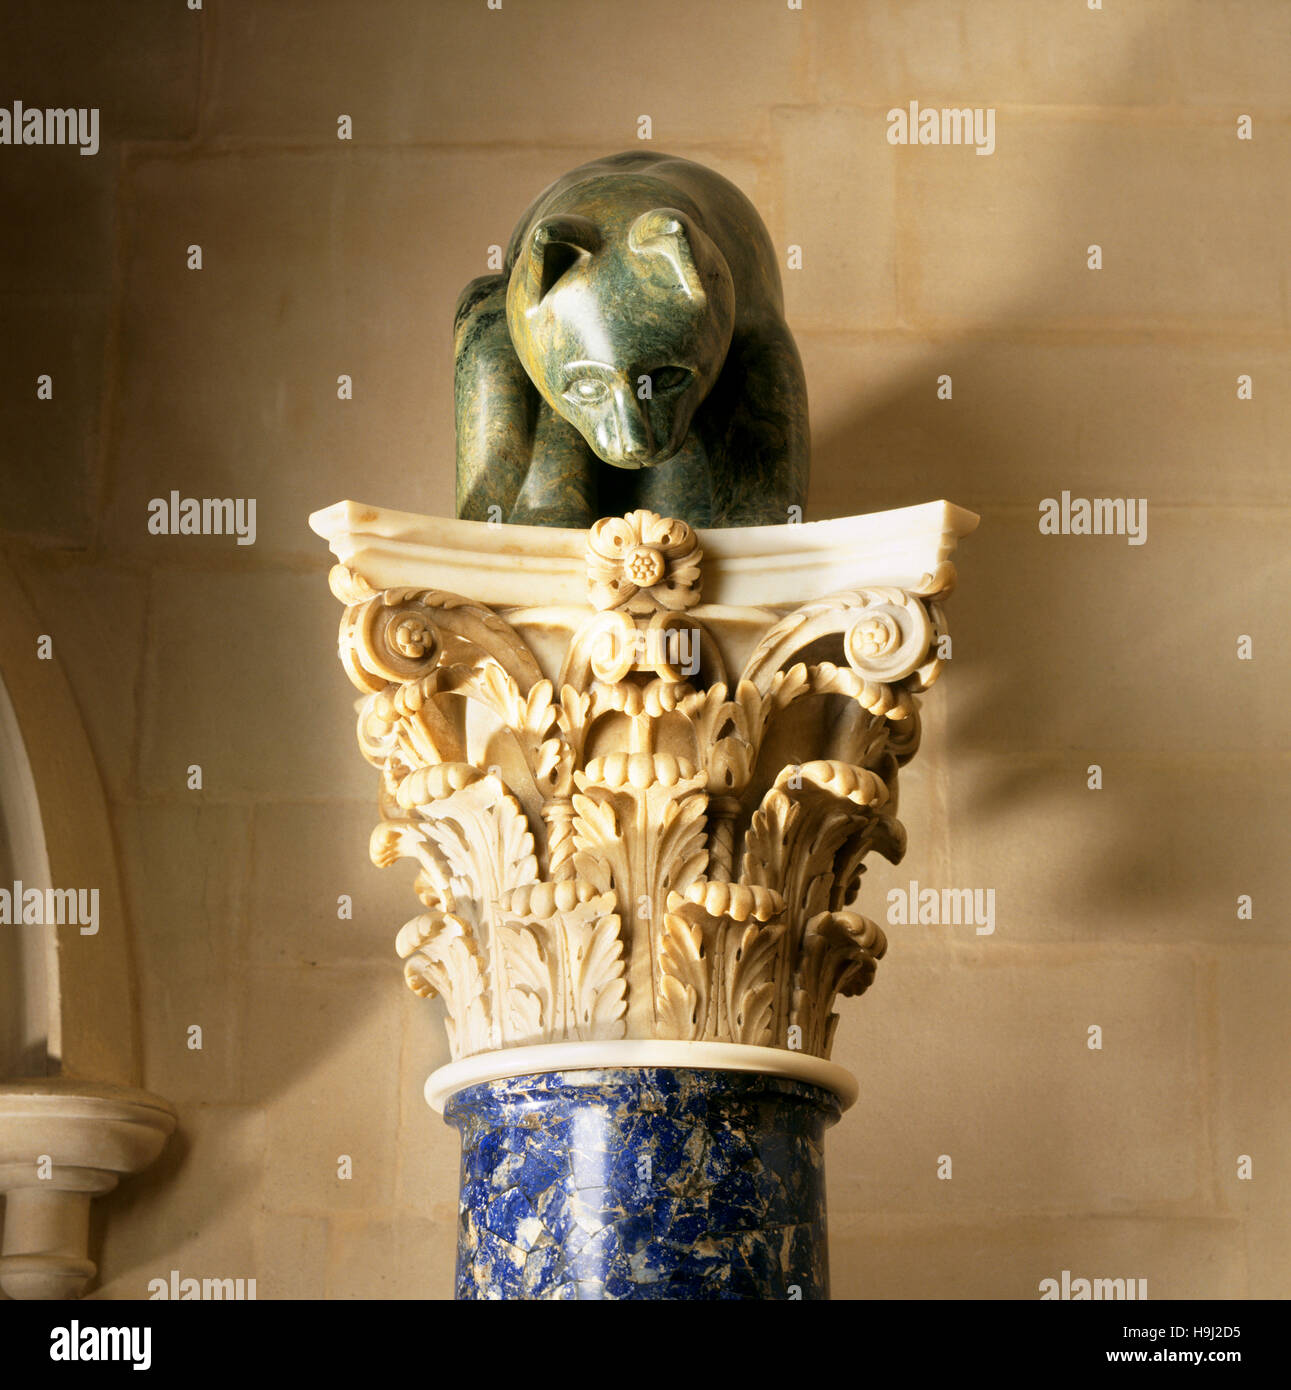 Un gato de esteatita mira hacia abajo desde uno de los italianos del siglo XVIII las columnas con capiteles corintios y ejes enchapados con lapislázuli. Foto de stock